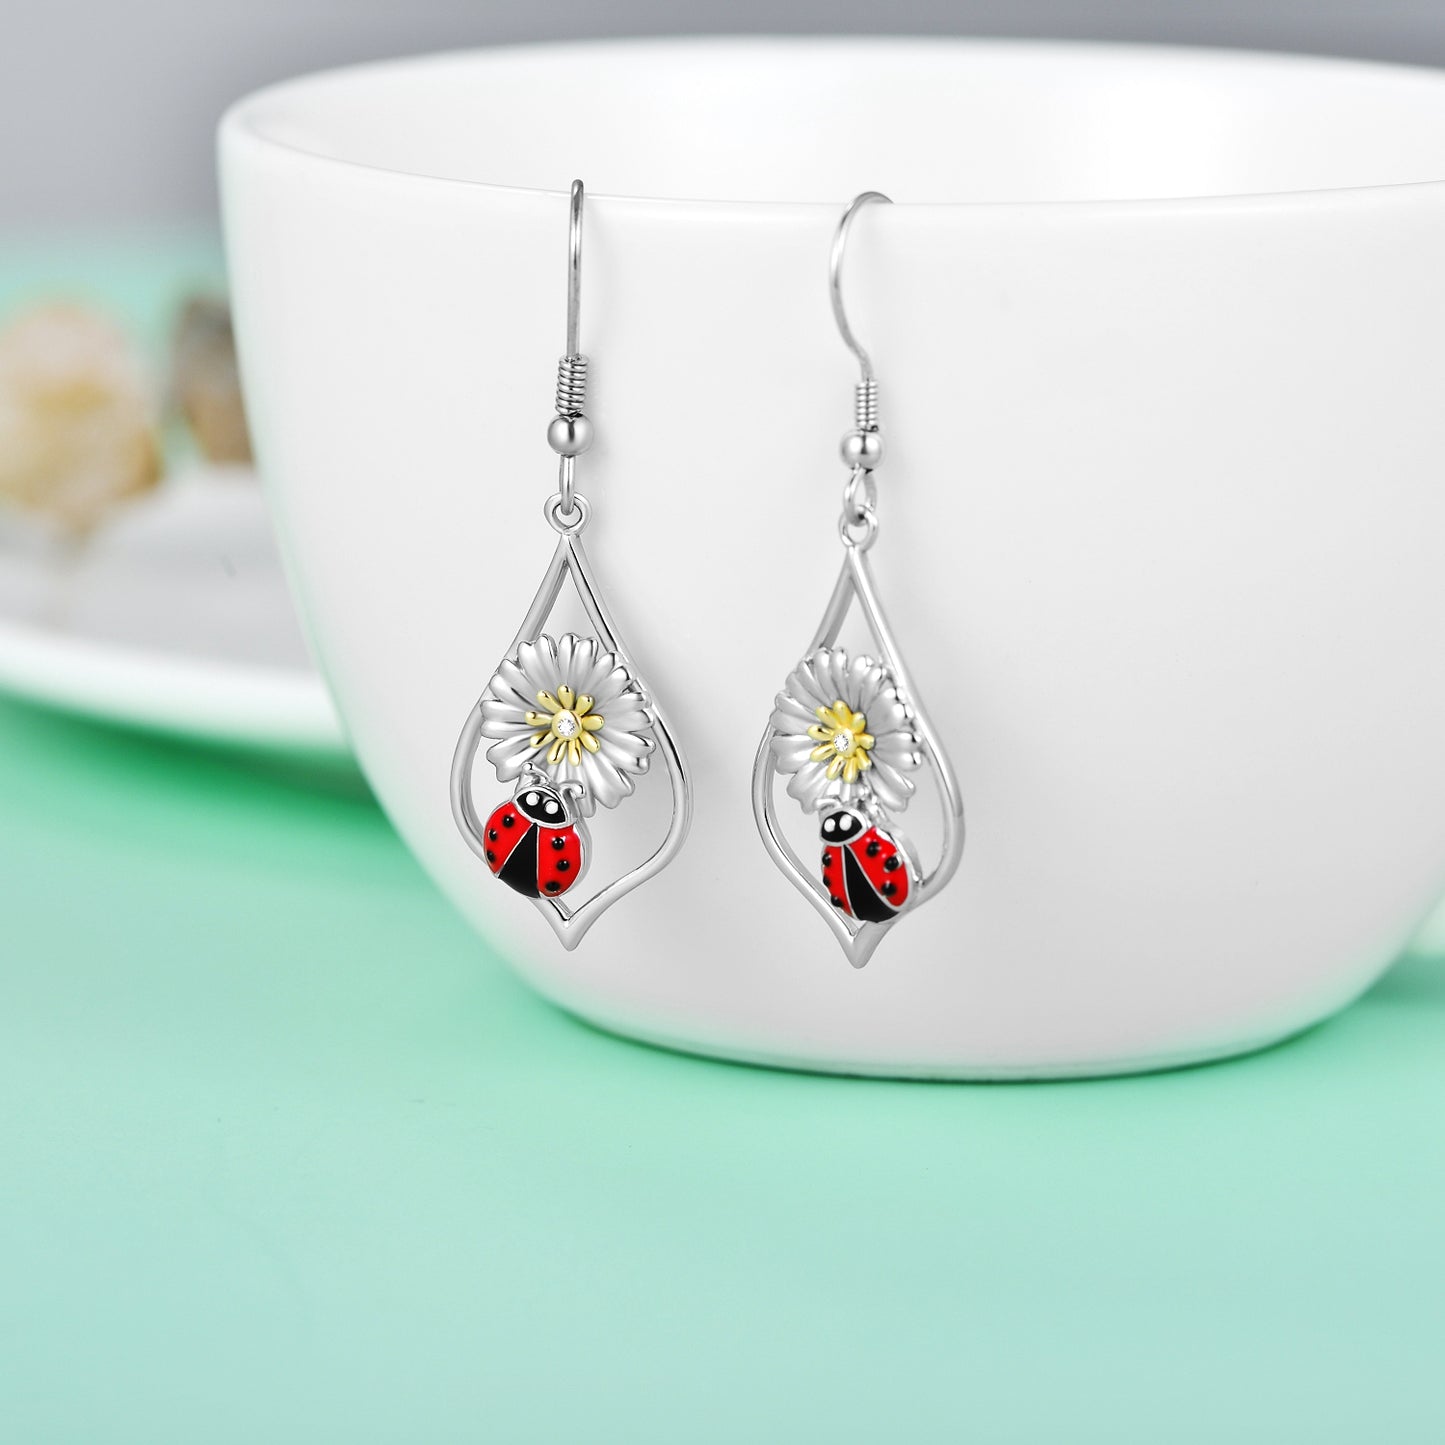 Ladybug Earrings Sterling Silver Daisy Flower Dangle Drop Hooks Earrings Ladybug Jewelry Gifts for Women Teens Birthday